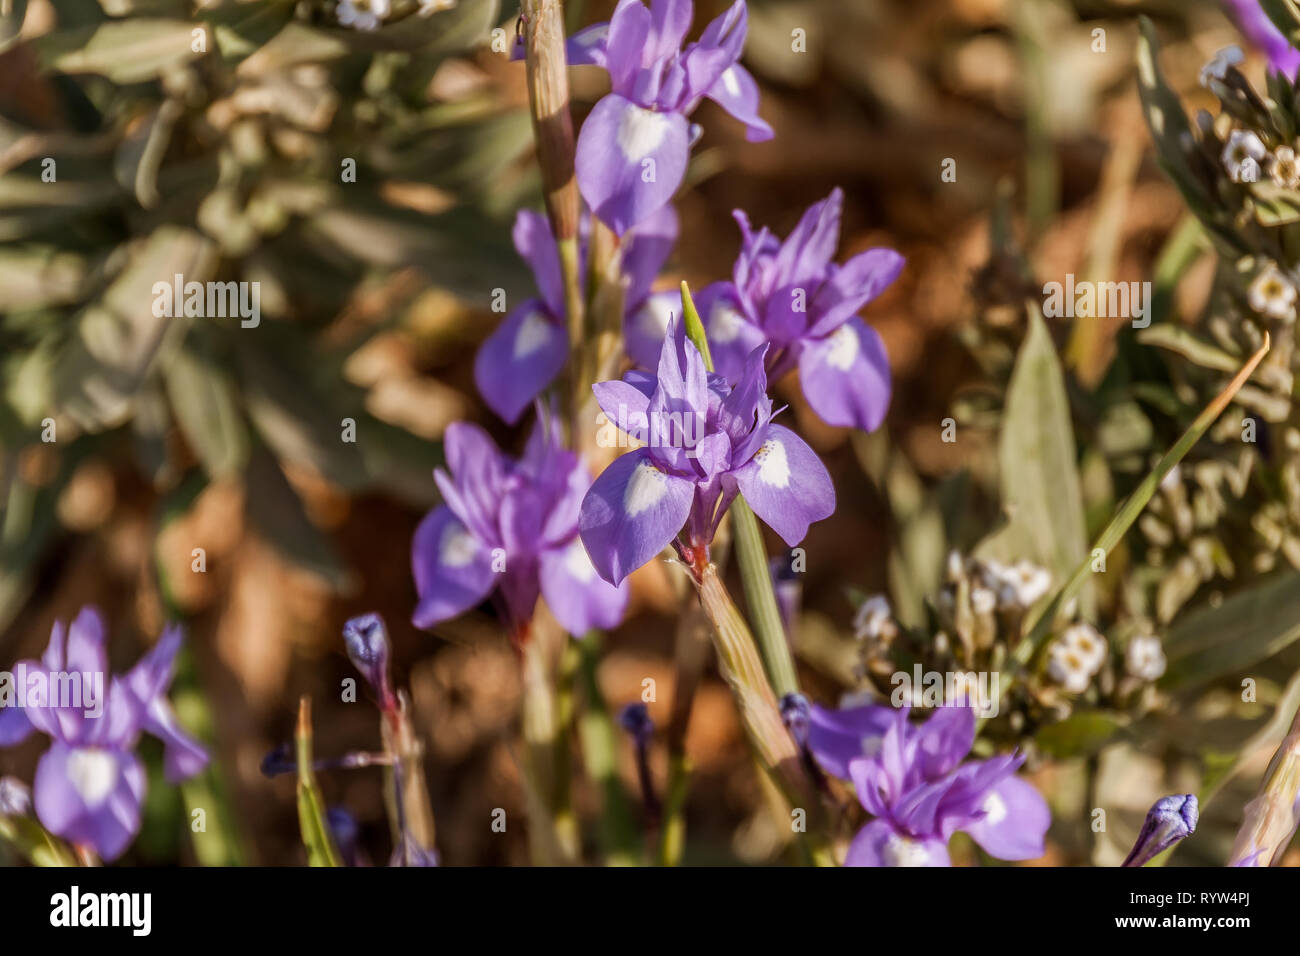 Blühende Moraea sisyrinchium (syn. Gynandriris sisyrinchium), der Barbary Mutter, ein Zwerg Iris, in der Wüste in der Nähe von Riad, Saudi-Arabien Stockfoto